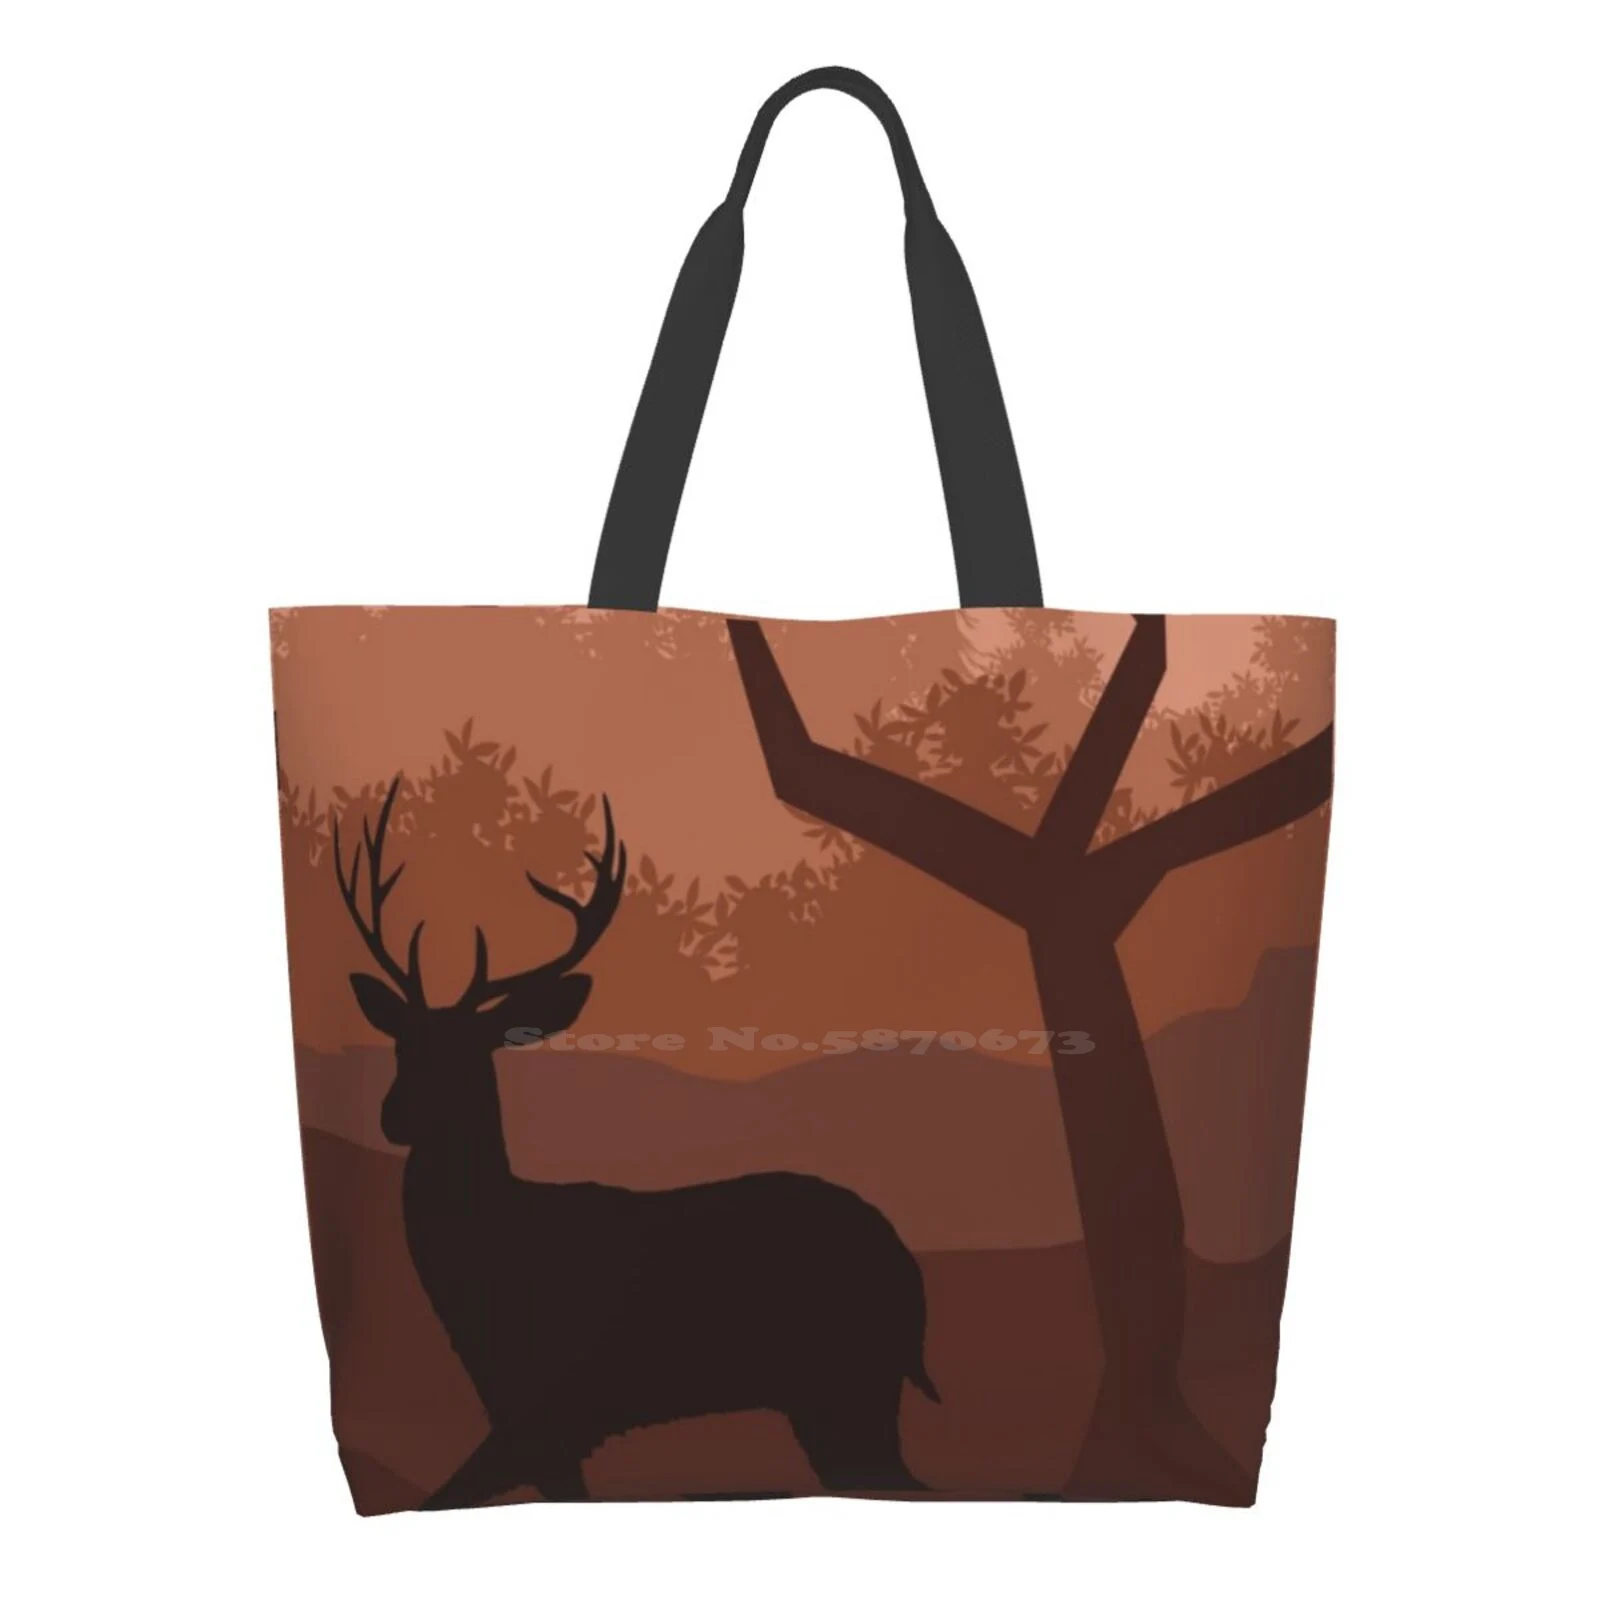 

Deer In The Evening Twilight Printed Casual Tote Large Capacity Handbags Deer Wild To Hunt Hunting Red Deer High Seat